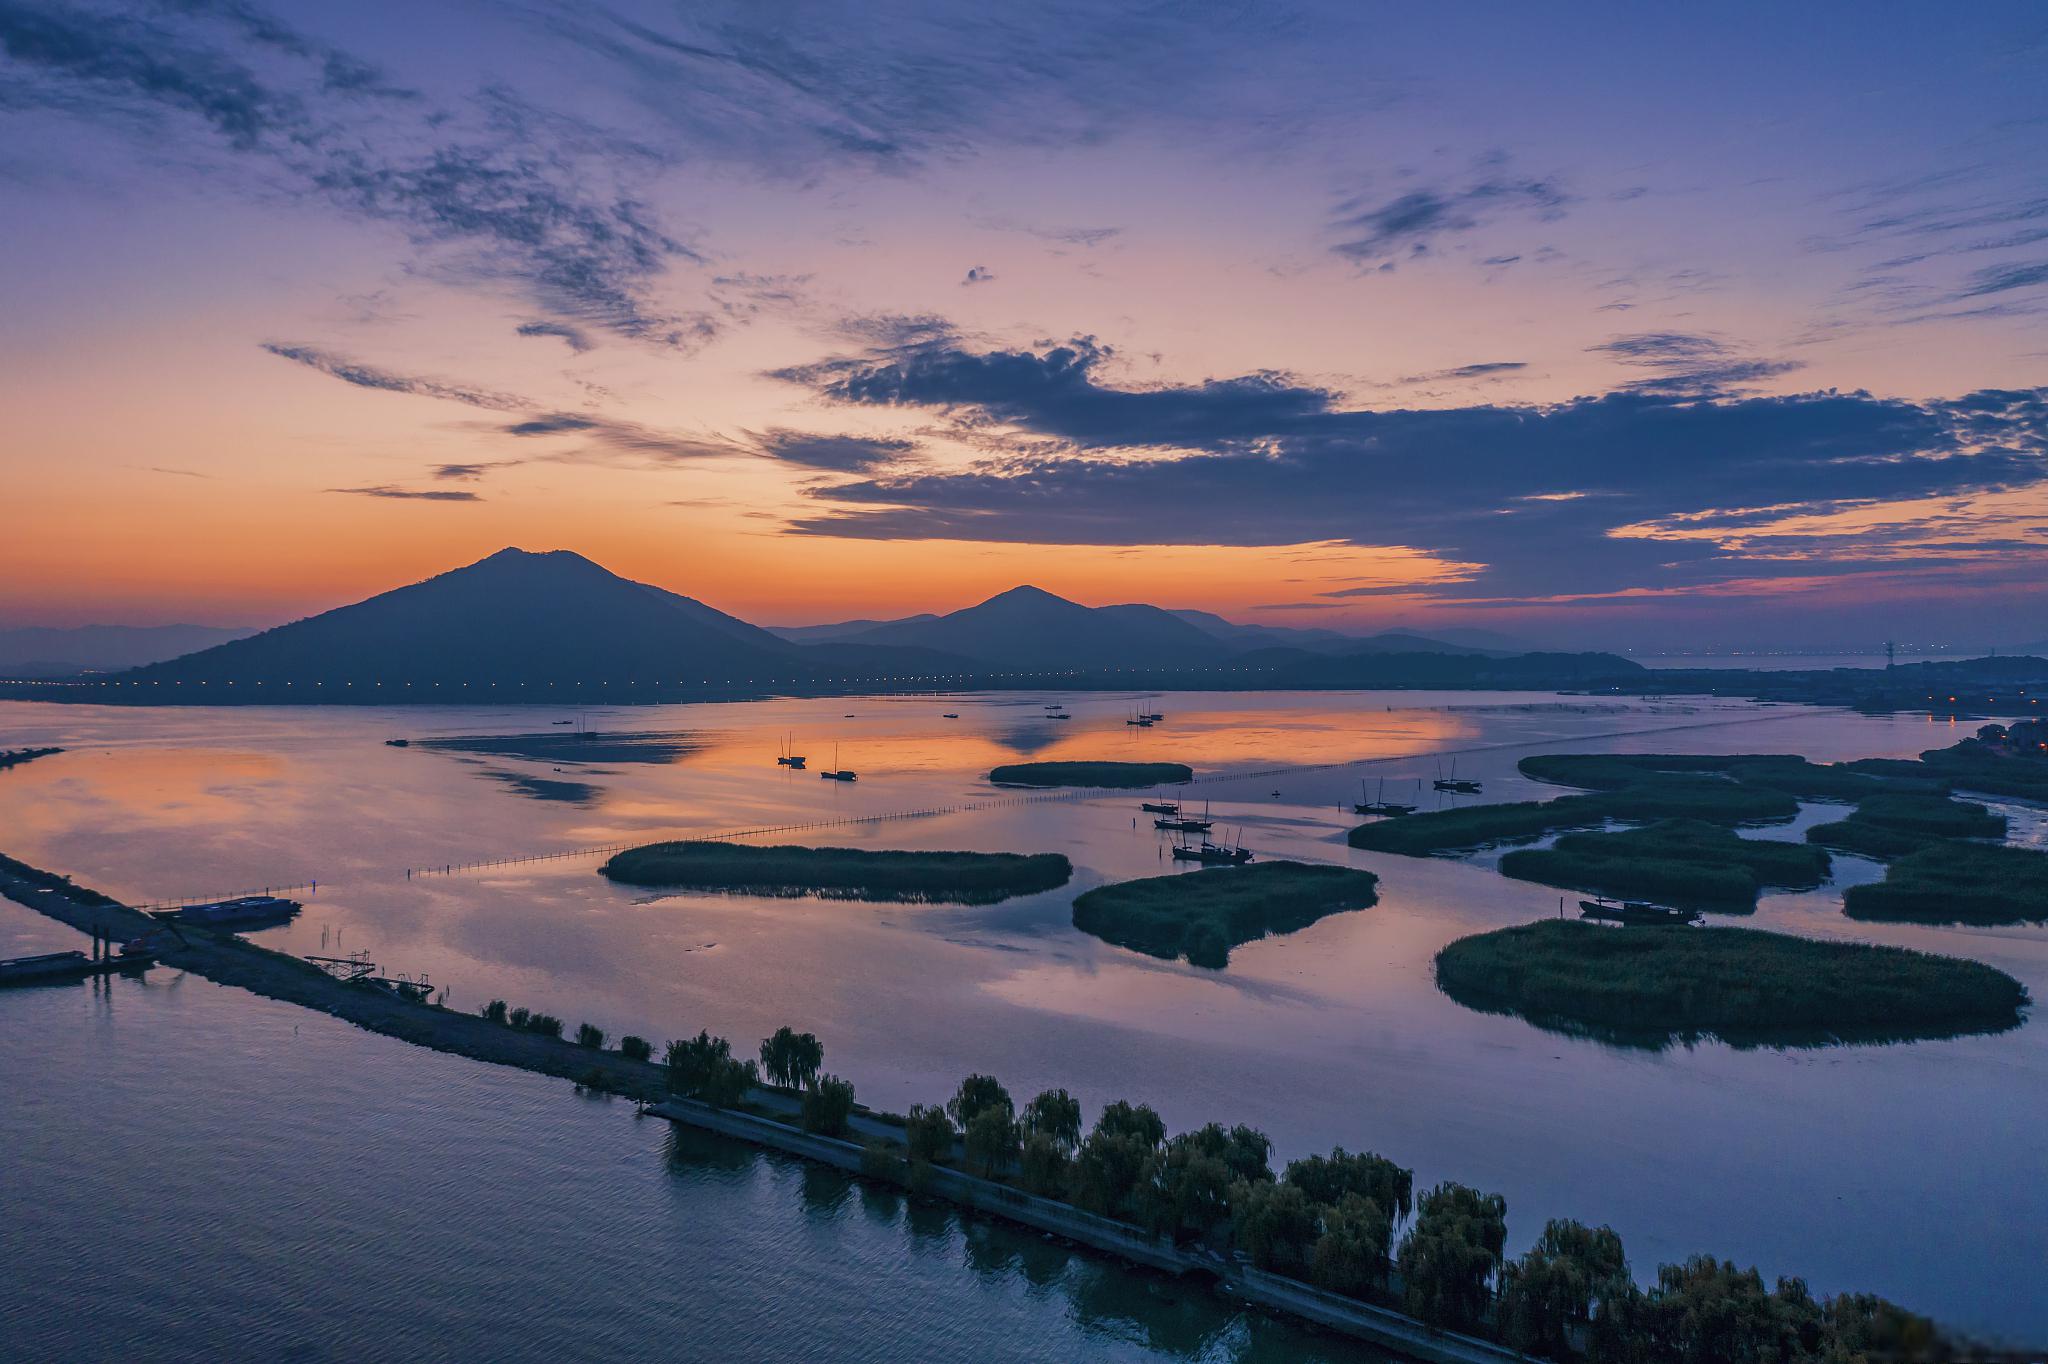 巢湖一日游推荐 巢湖,位于安徽省合肥市,是中国五大淡水湖之一,拥有得